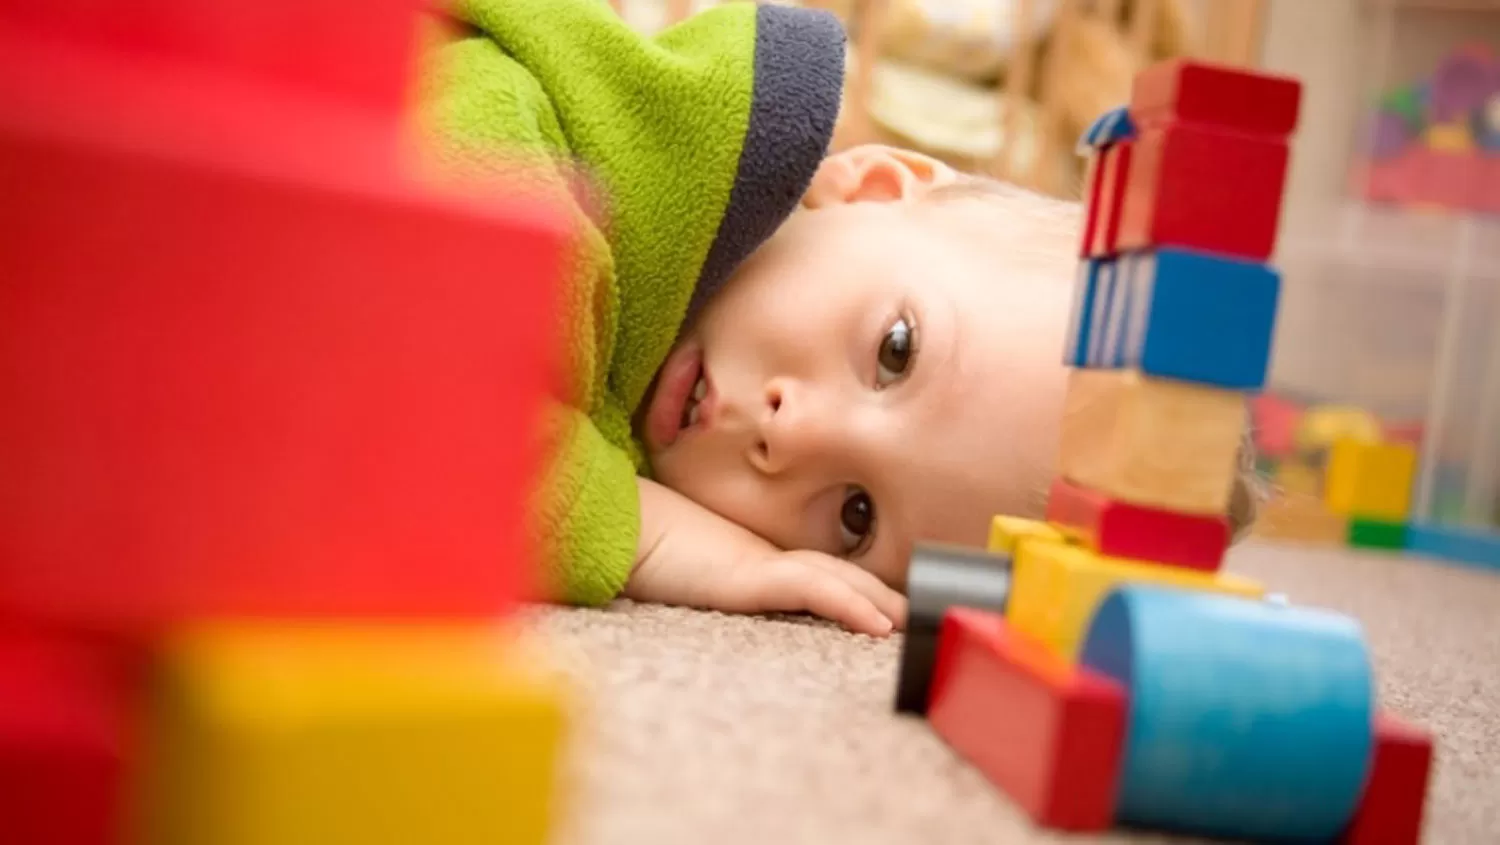 El autismo puede detectarse desde los 14 meses de edad, según un estudio